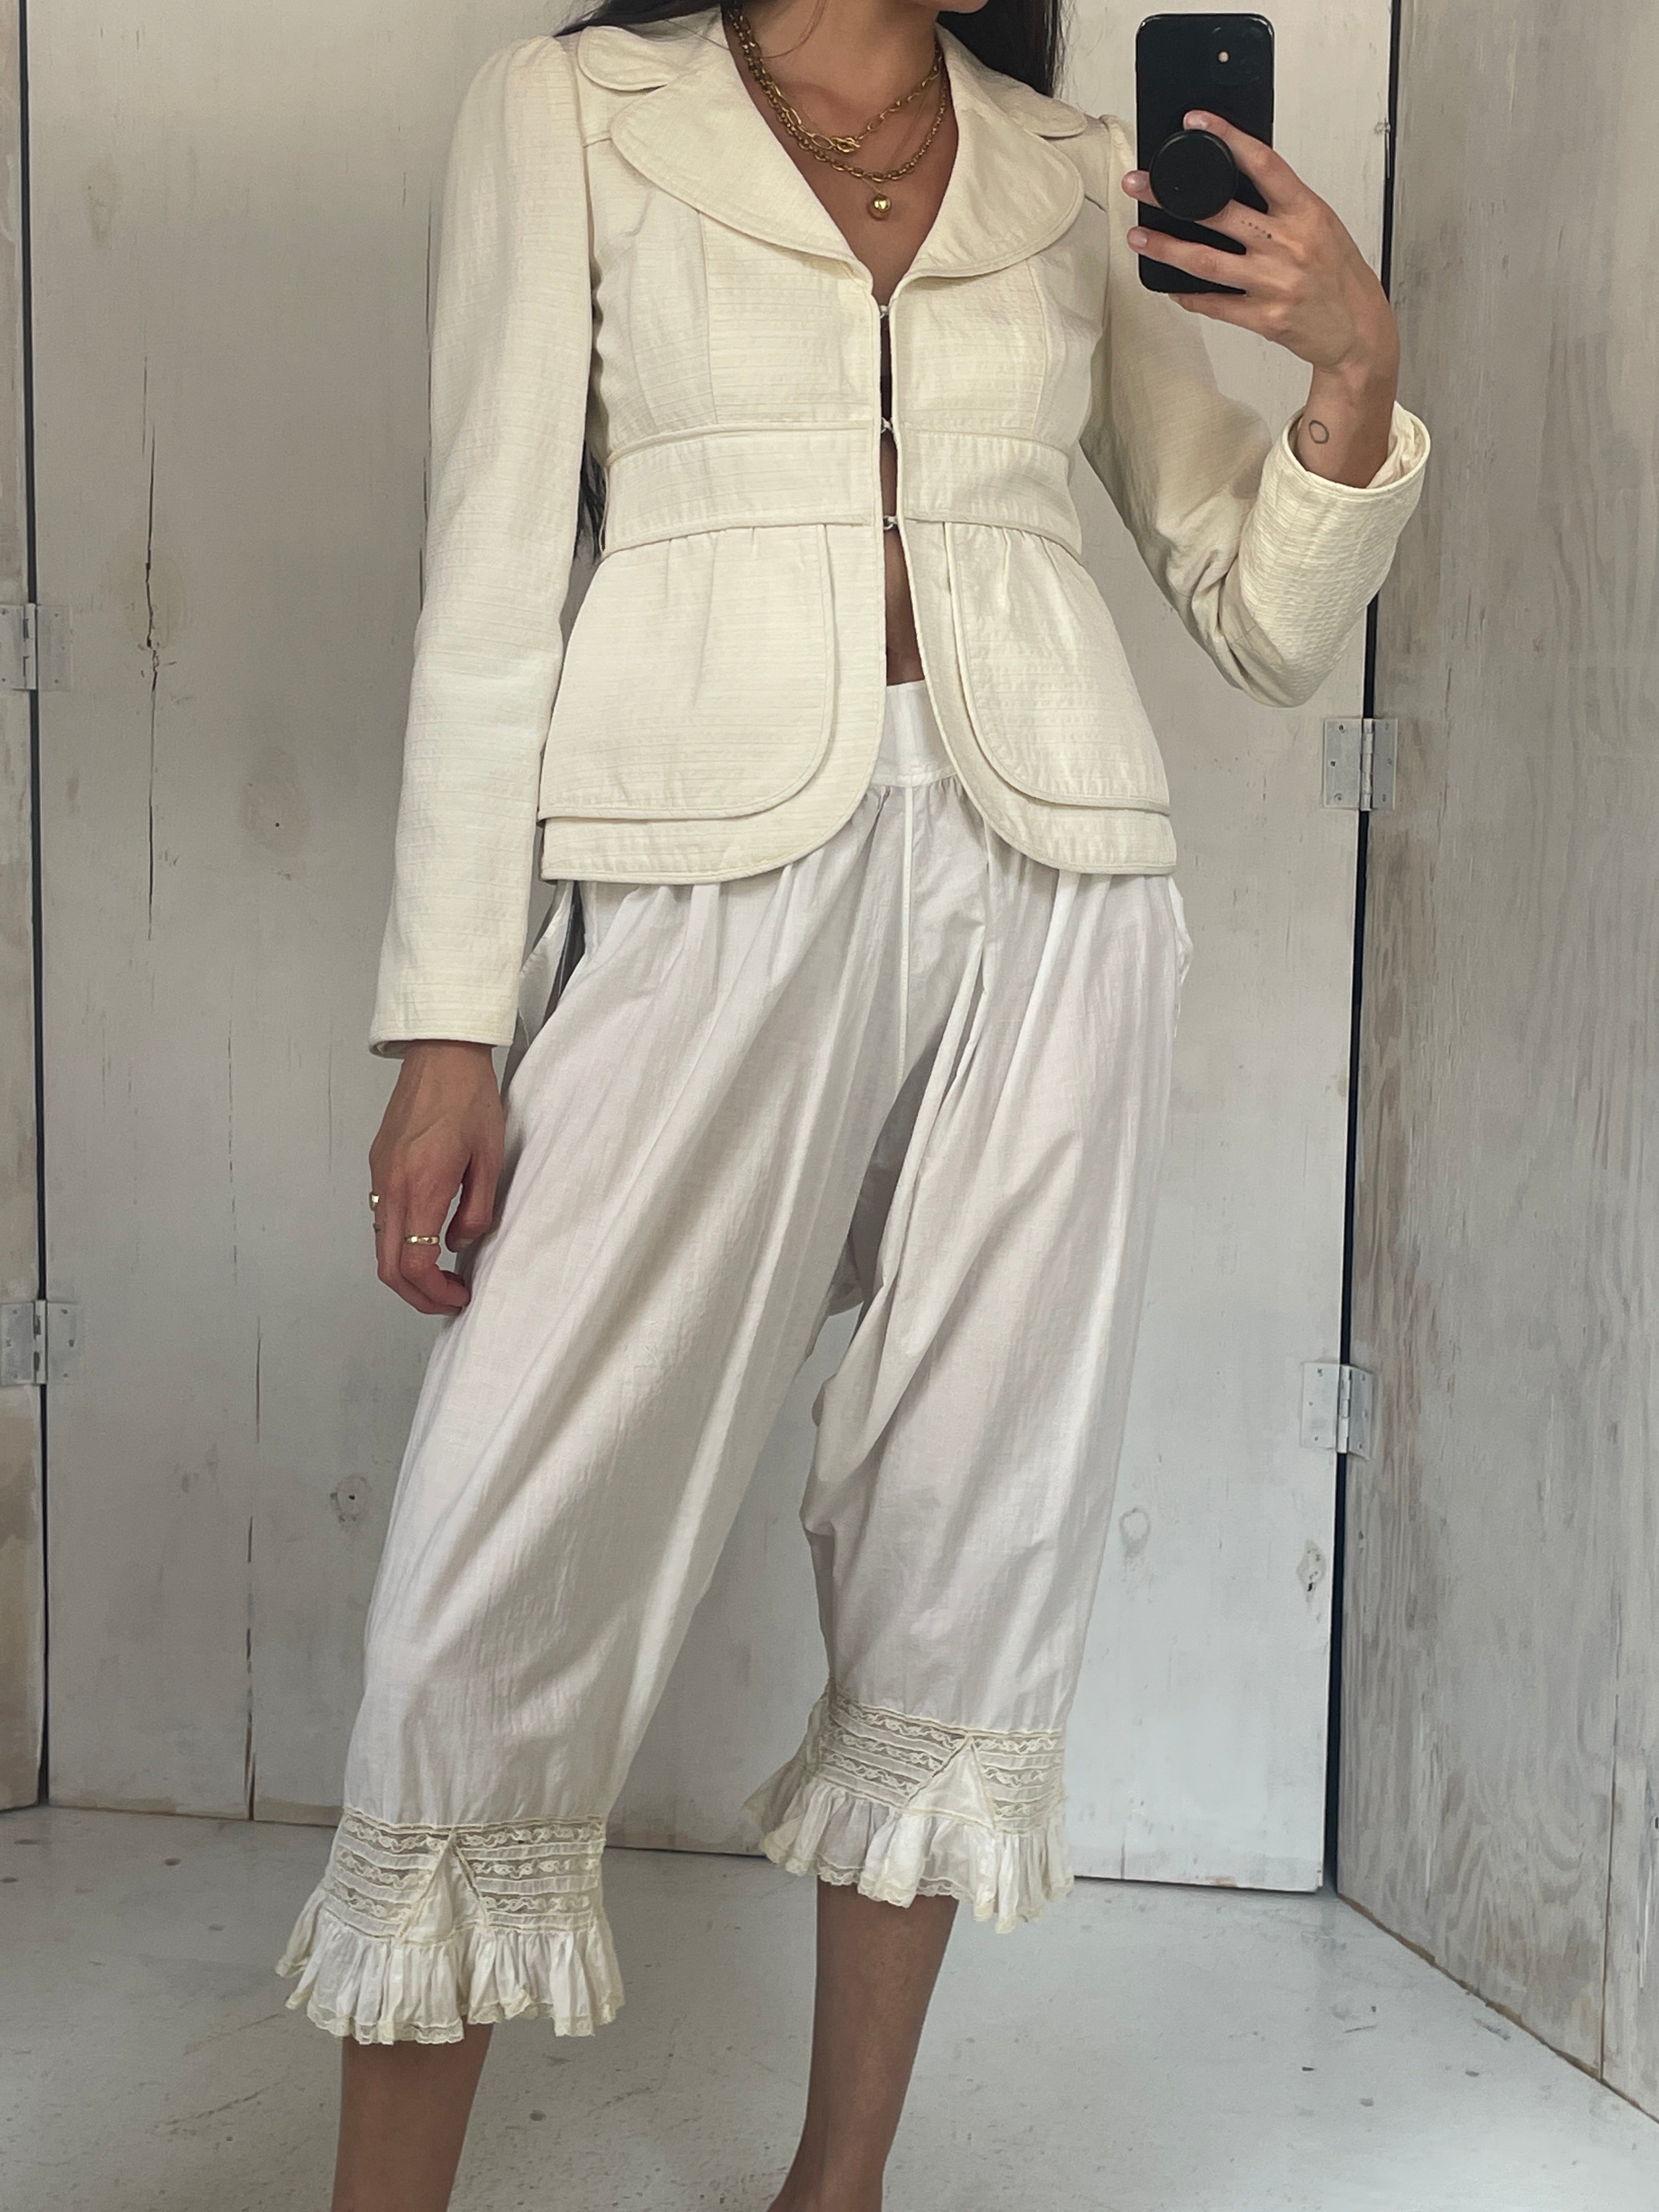 Superette  Cotton Lace Shorts - White